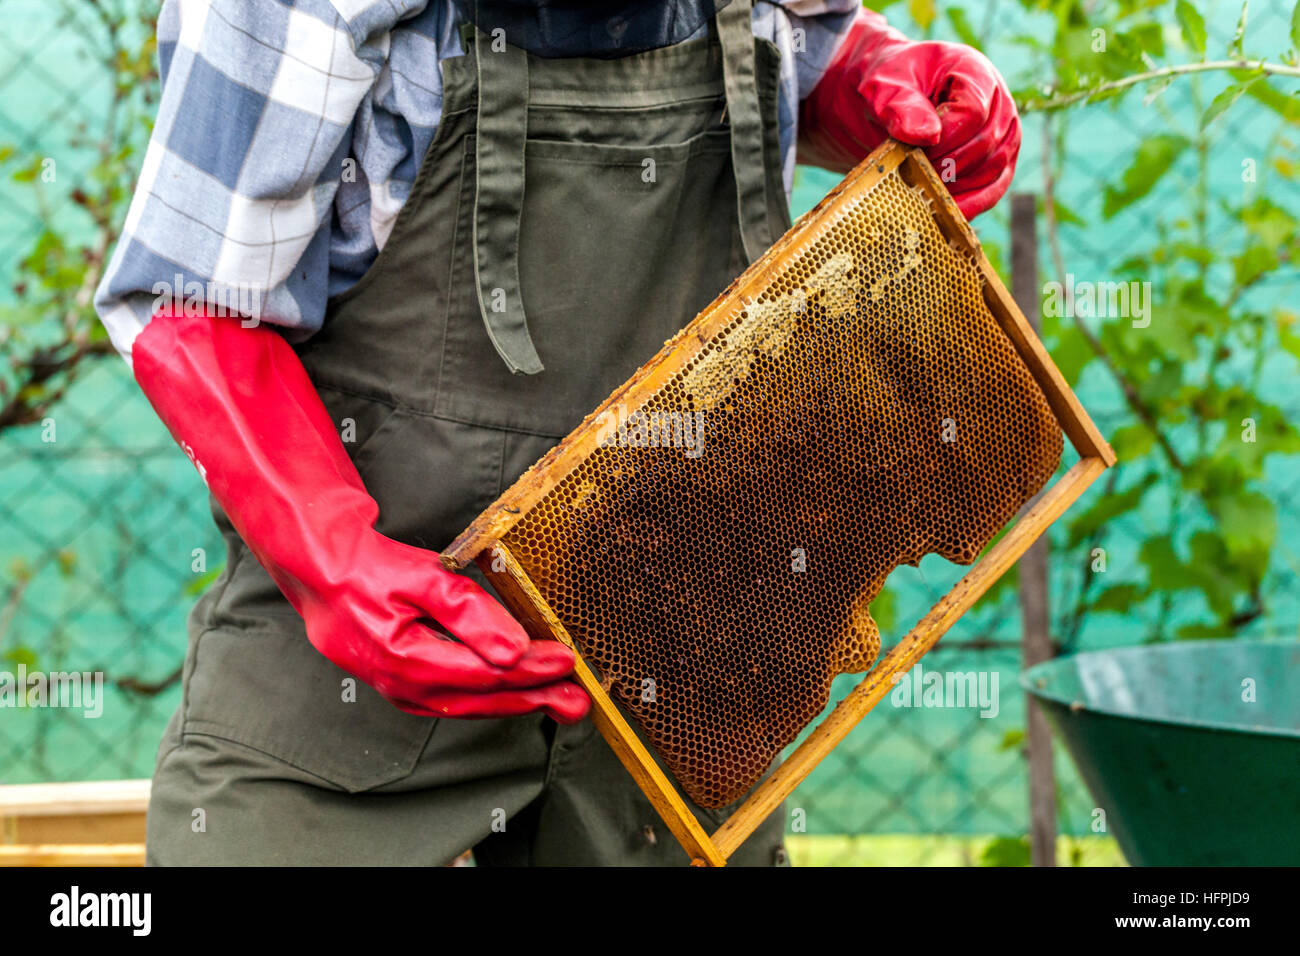 Apicultor en el traje de trabajo sosteniendo panal de miel, miel llena, Beekeeper marco de inspección Foto de stock